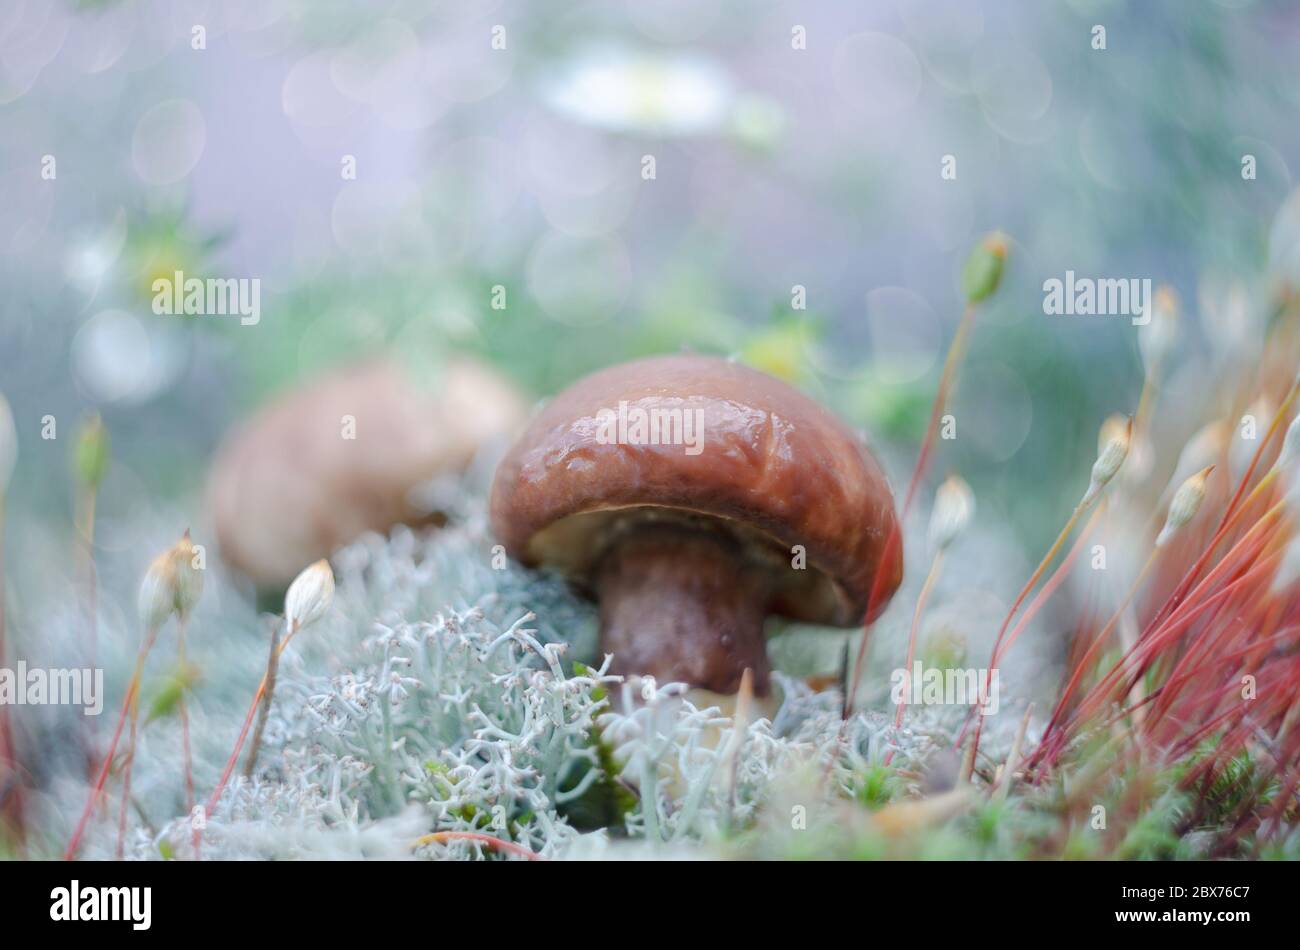 Les champignons comestibles poussent dans la mousse. Habitat naturel, macro Banque D'Images